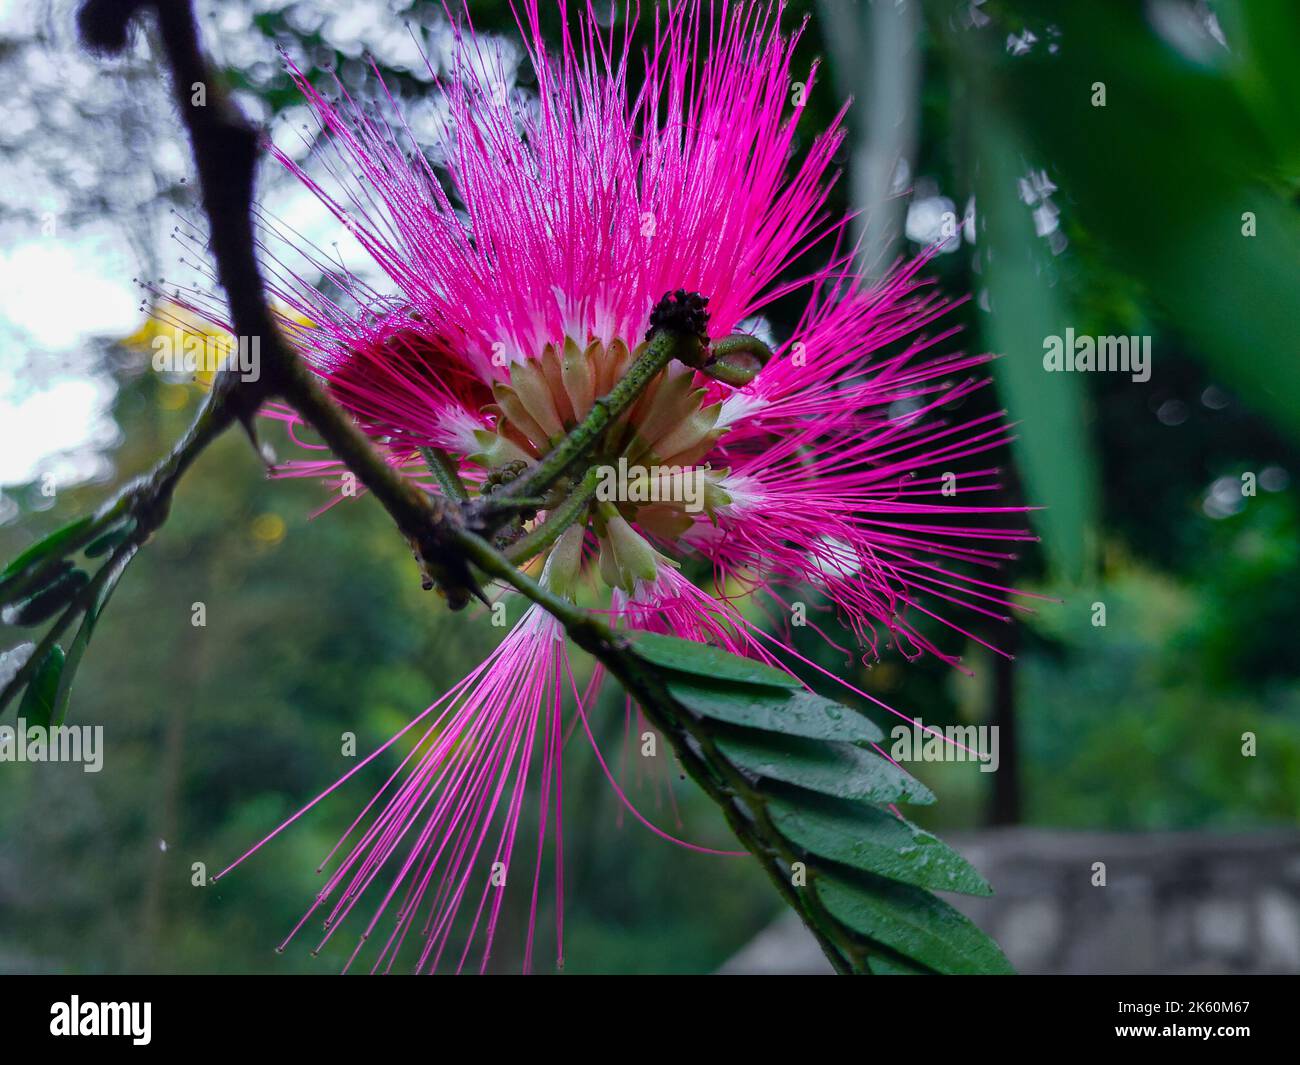 Blätter und Blüten von Albizia julibrissin, dem persischen Seidenbaum, dem rosa Seidenbaum oder dem Mimosenbaum. Uttarakhand Indien. Stockfoto